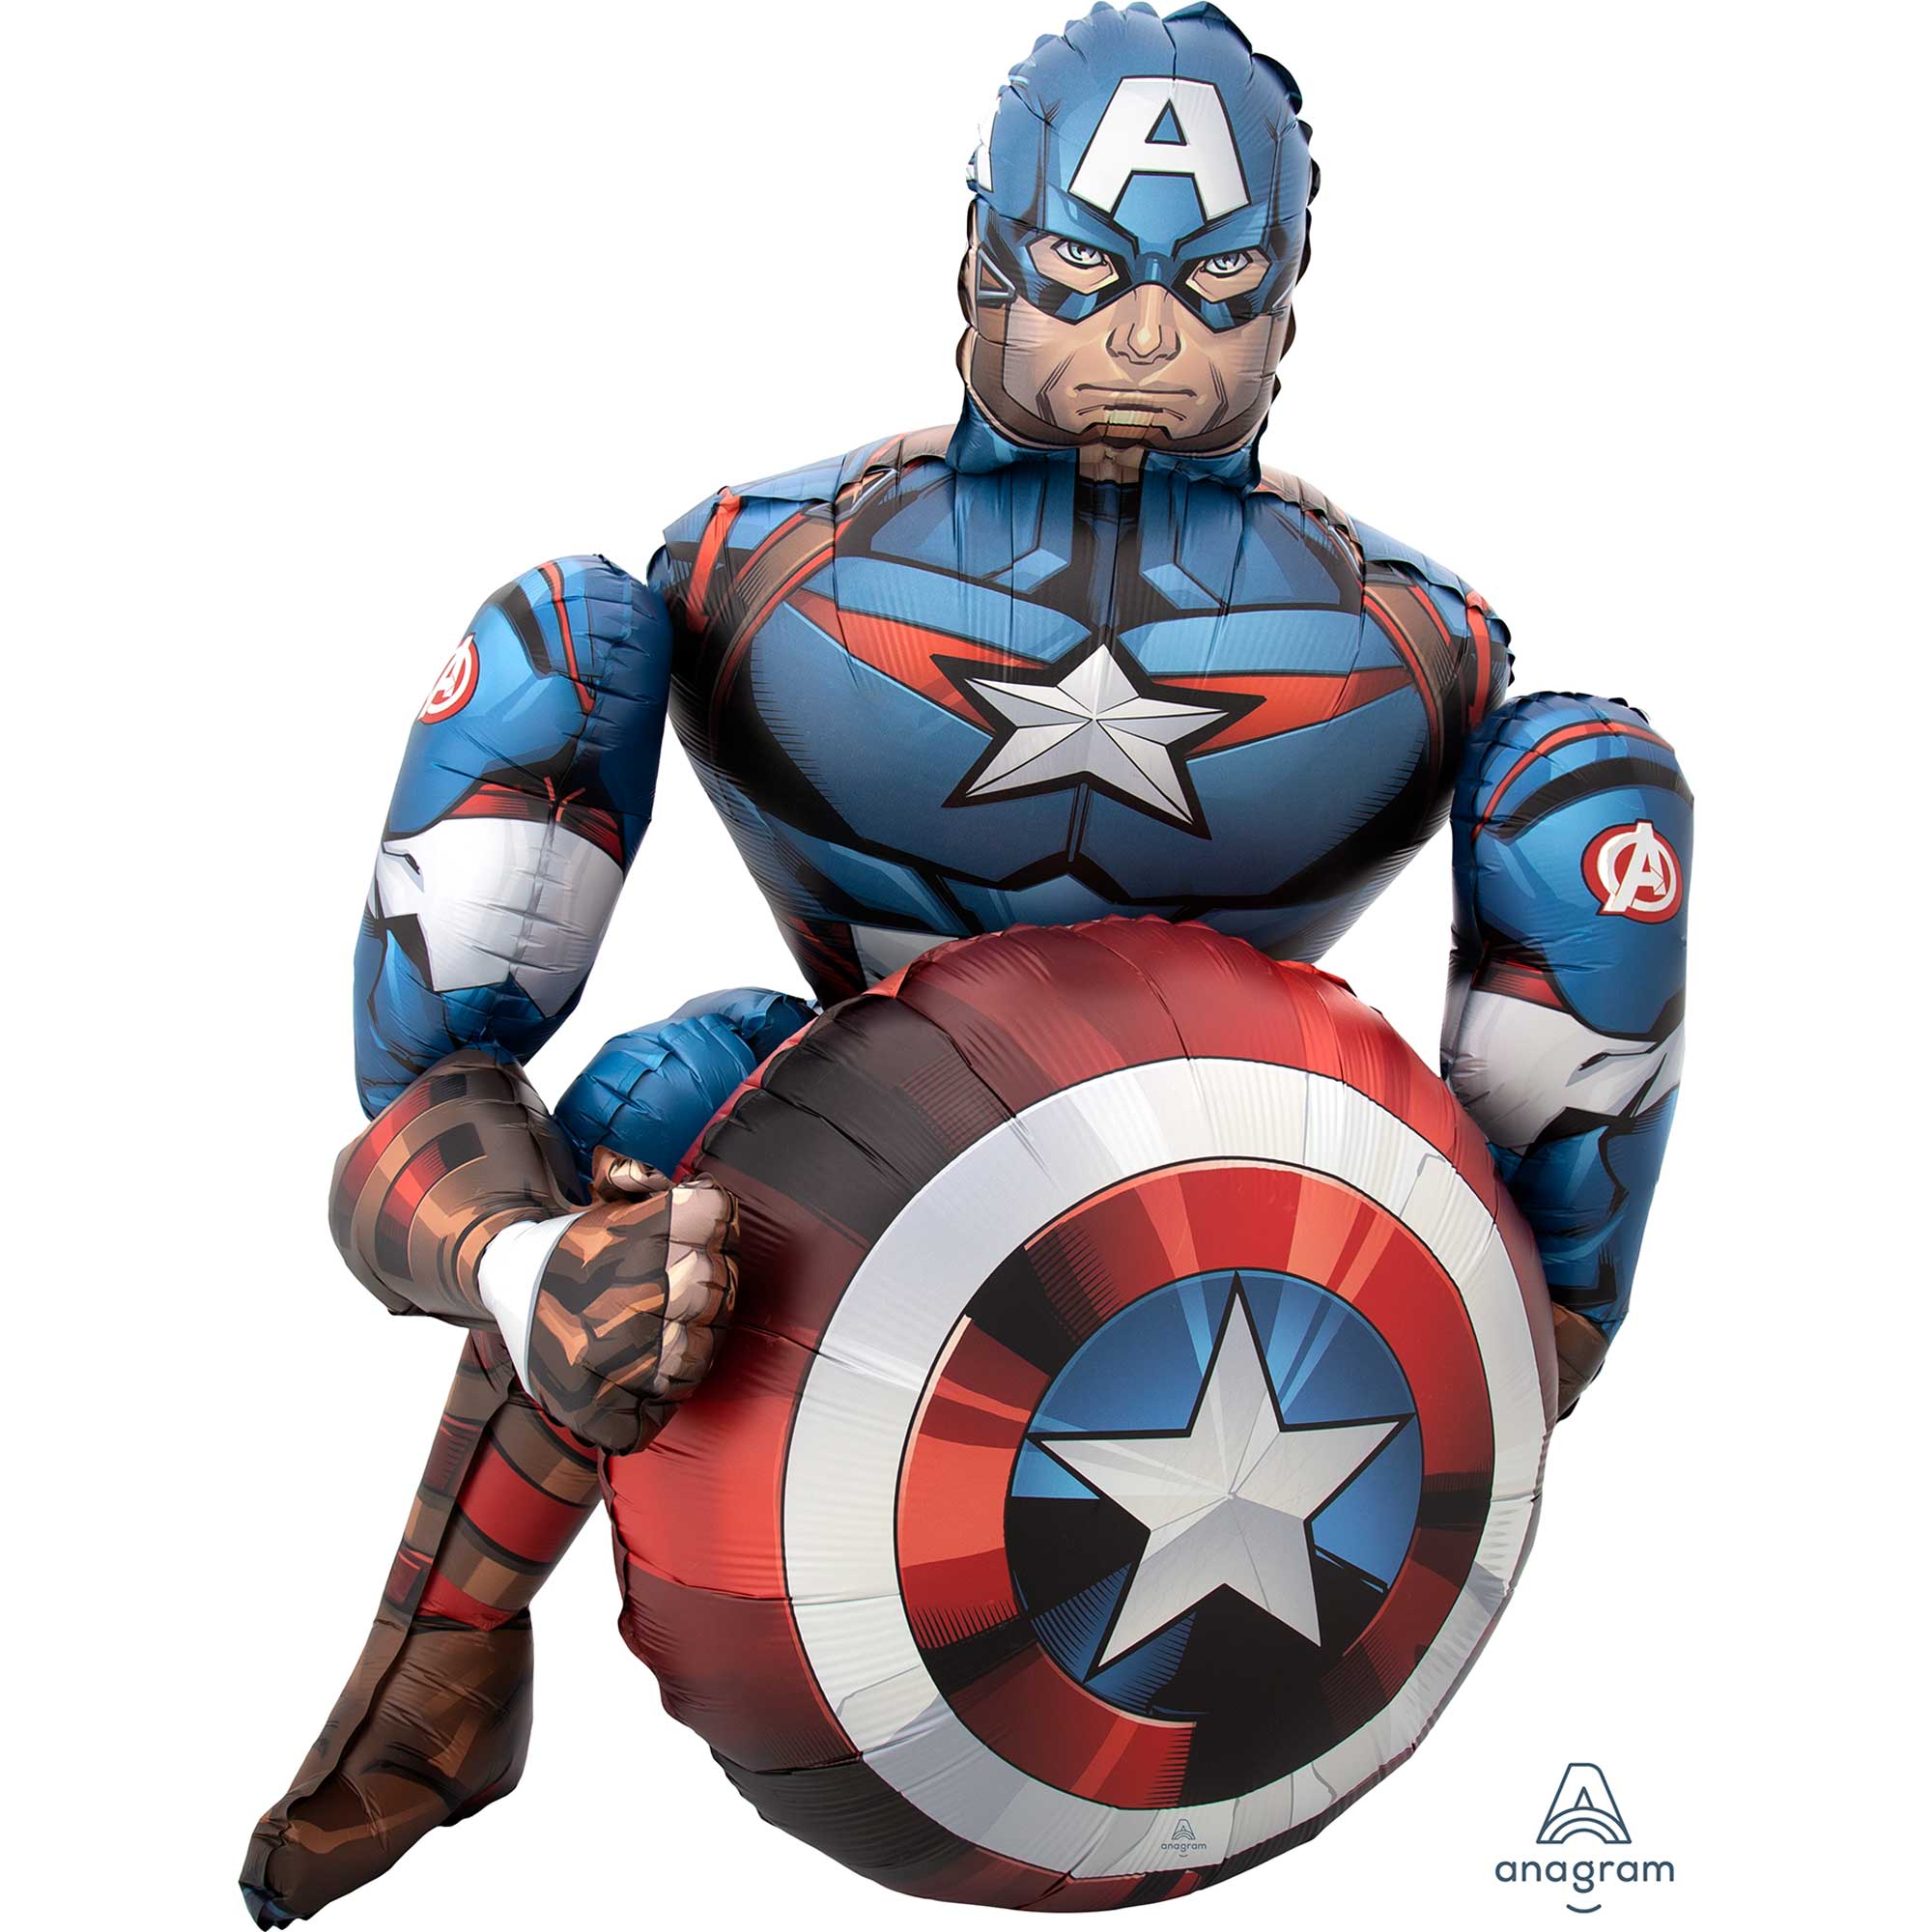 Marvel Avengers Captain America AirWalker Foil Balloon - 86x99cm Default Title